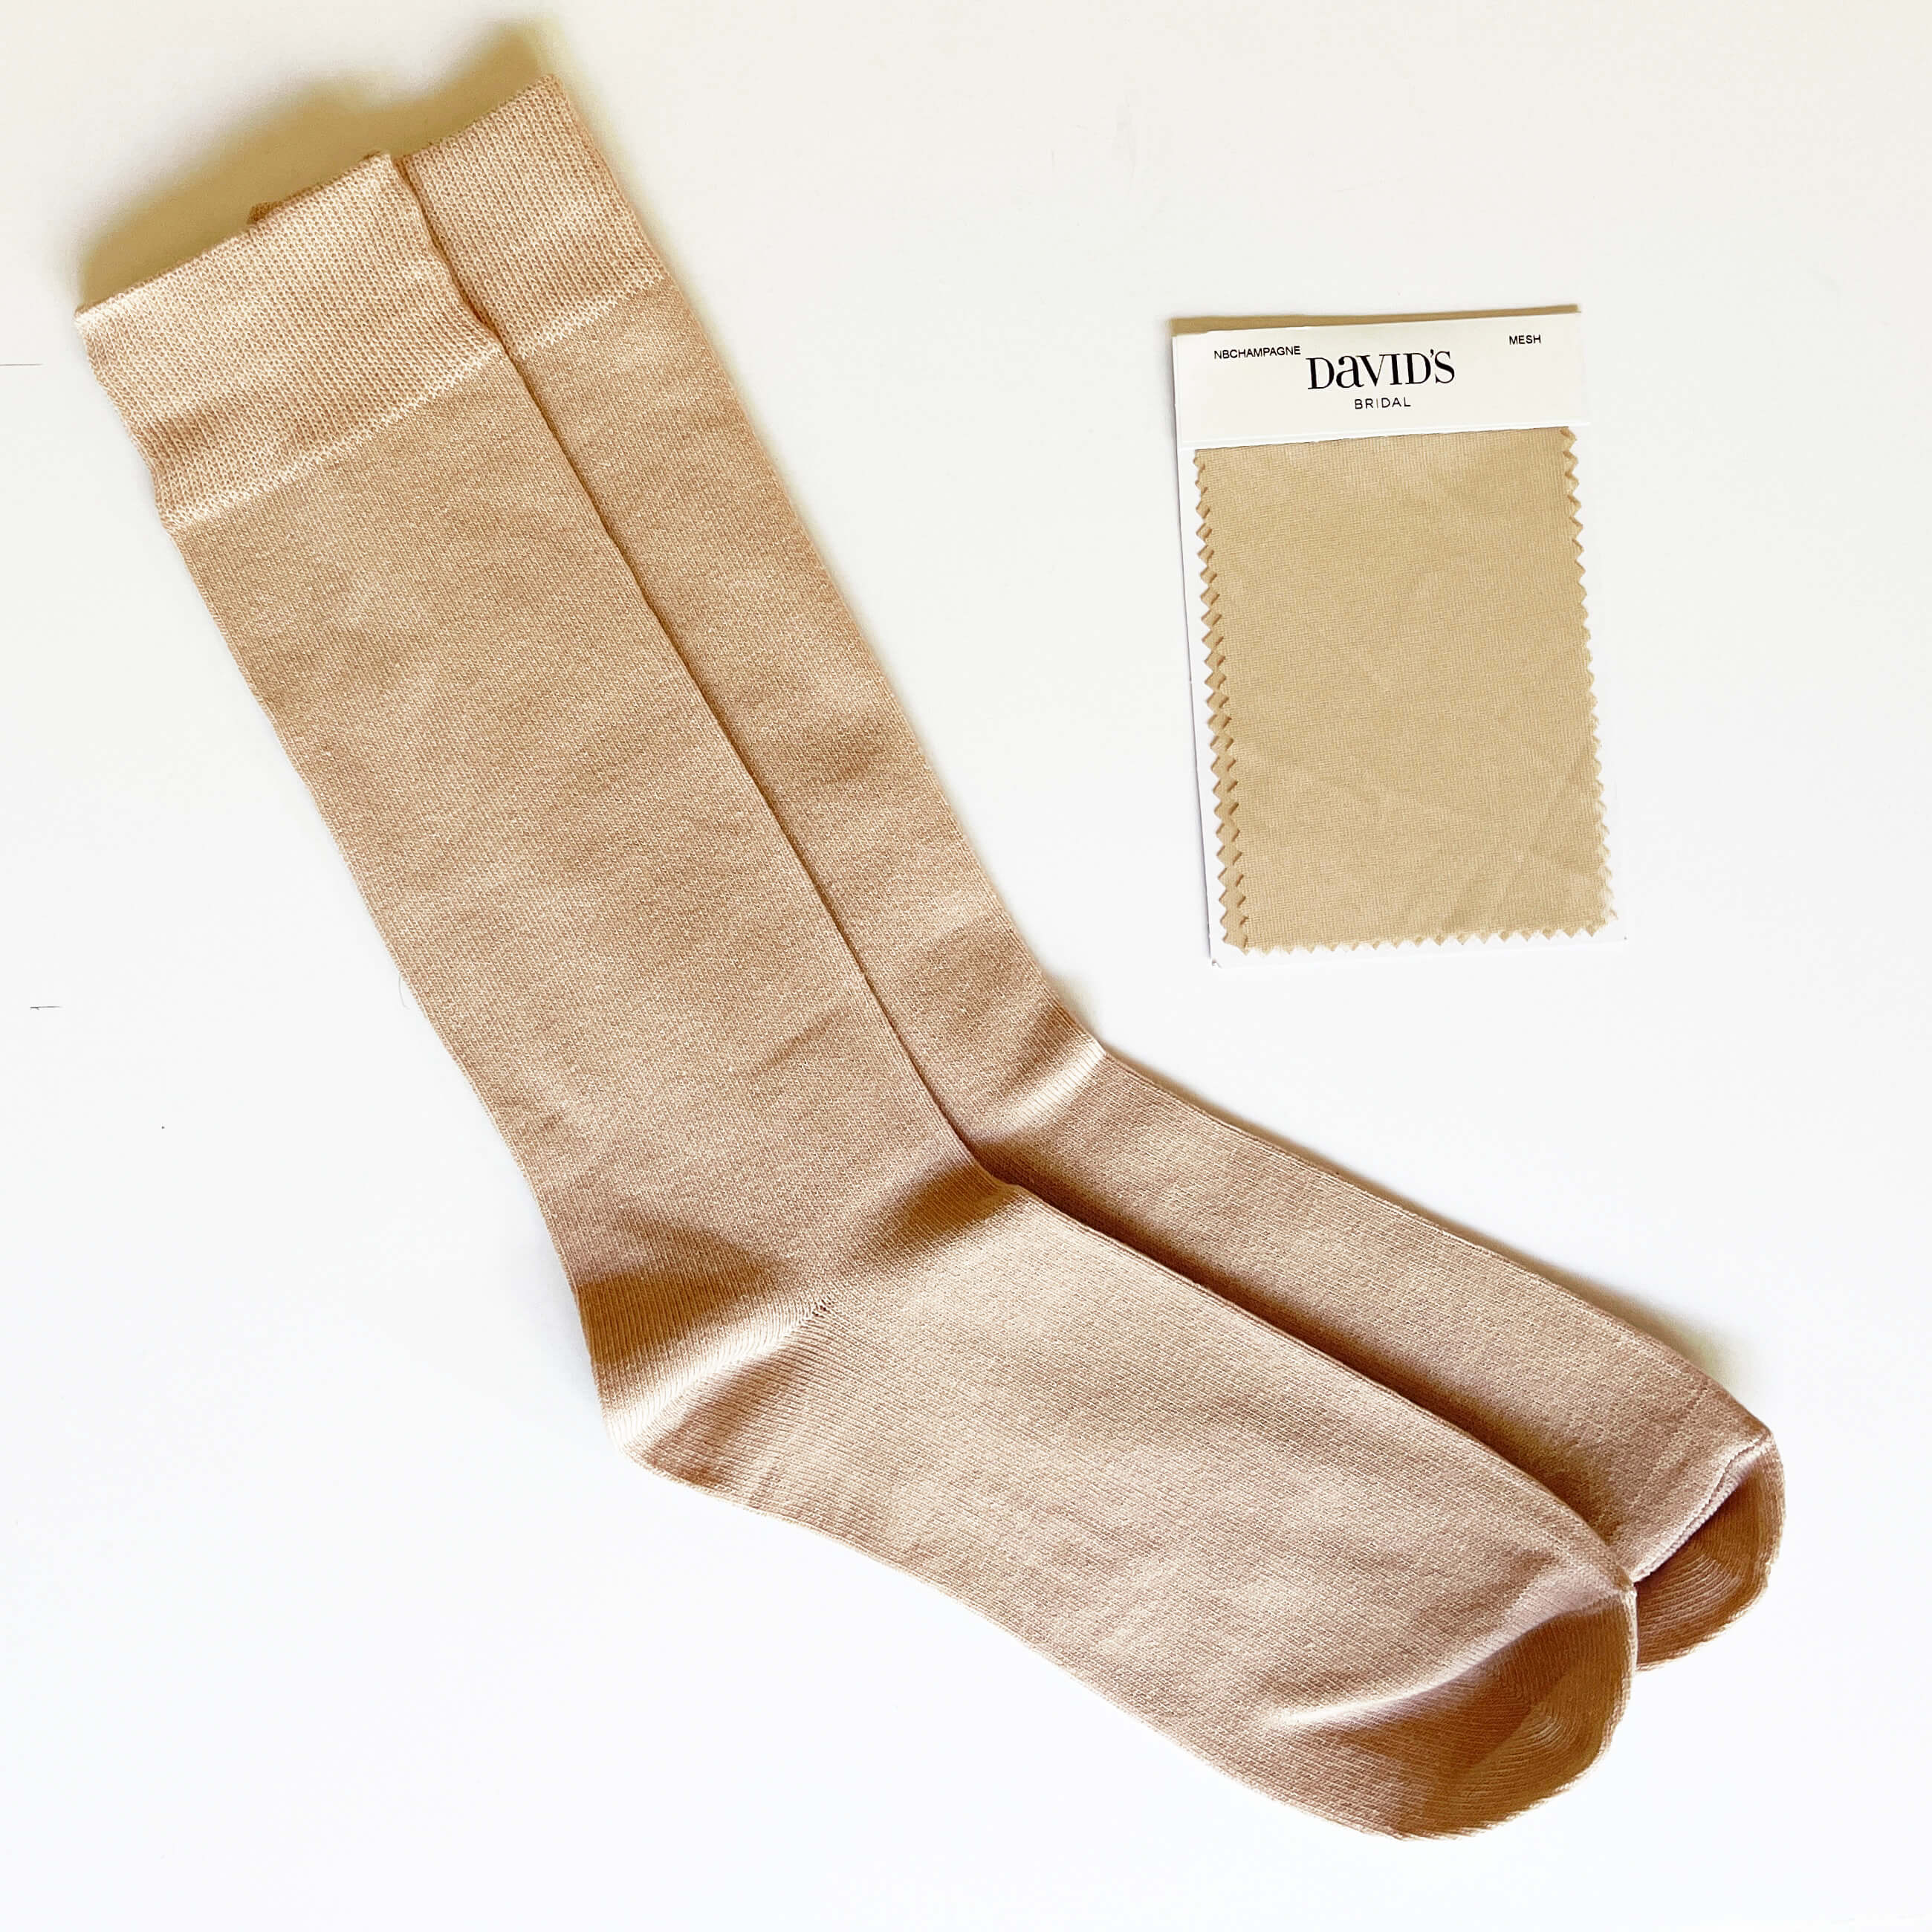 Similar to NB CHAMPAGNE(David's Bridal) Men's/Groomsmen Socks